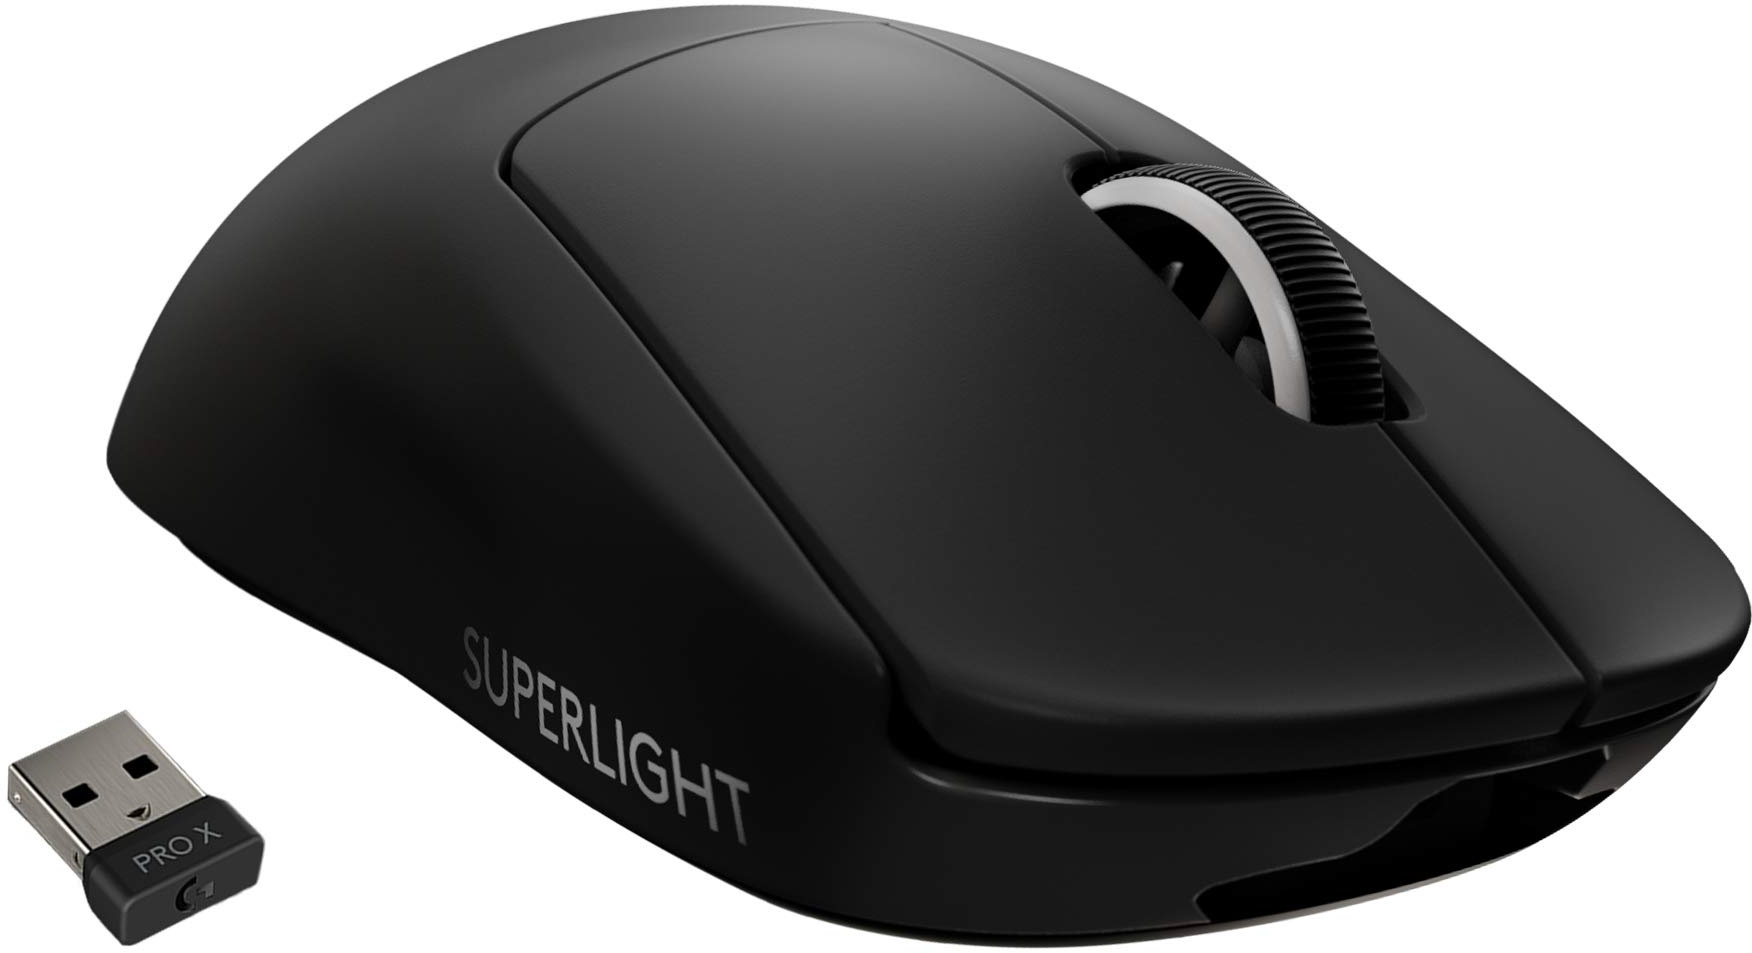 Logitech G PRO X SUPERLIGHT kabellose Gaming-Maus mit HERO 25K Sensor, Ultra-leicht mit 63g, 5 programmierbare Tasten, 70 Stunden Akkulaufzeit, Zero Additive PTFE Feet, PC/Mac - Schwarz